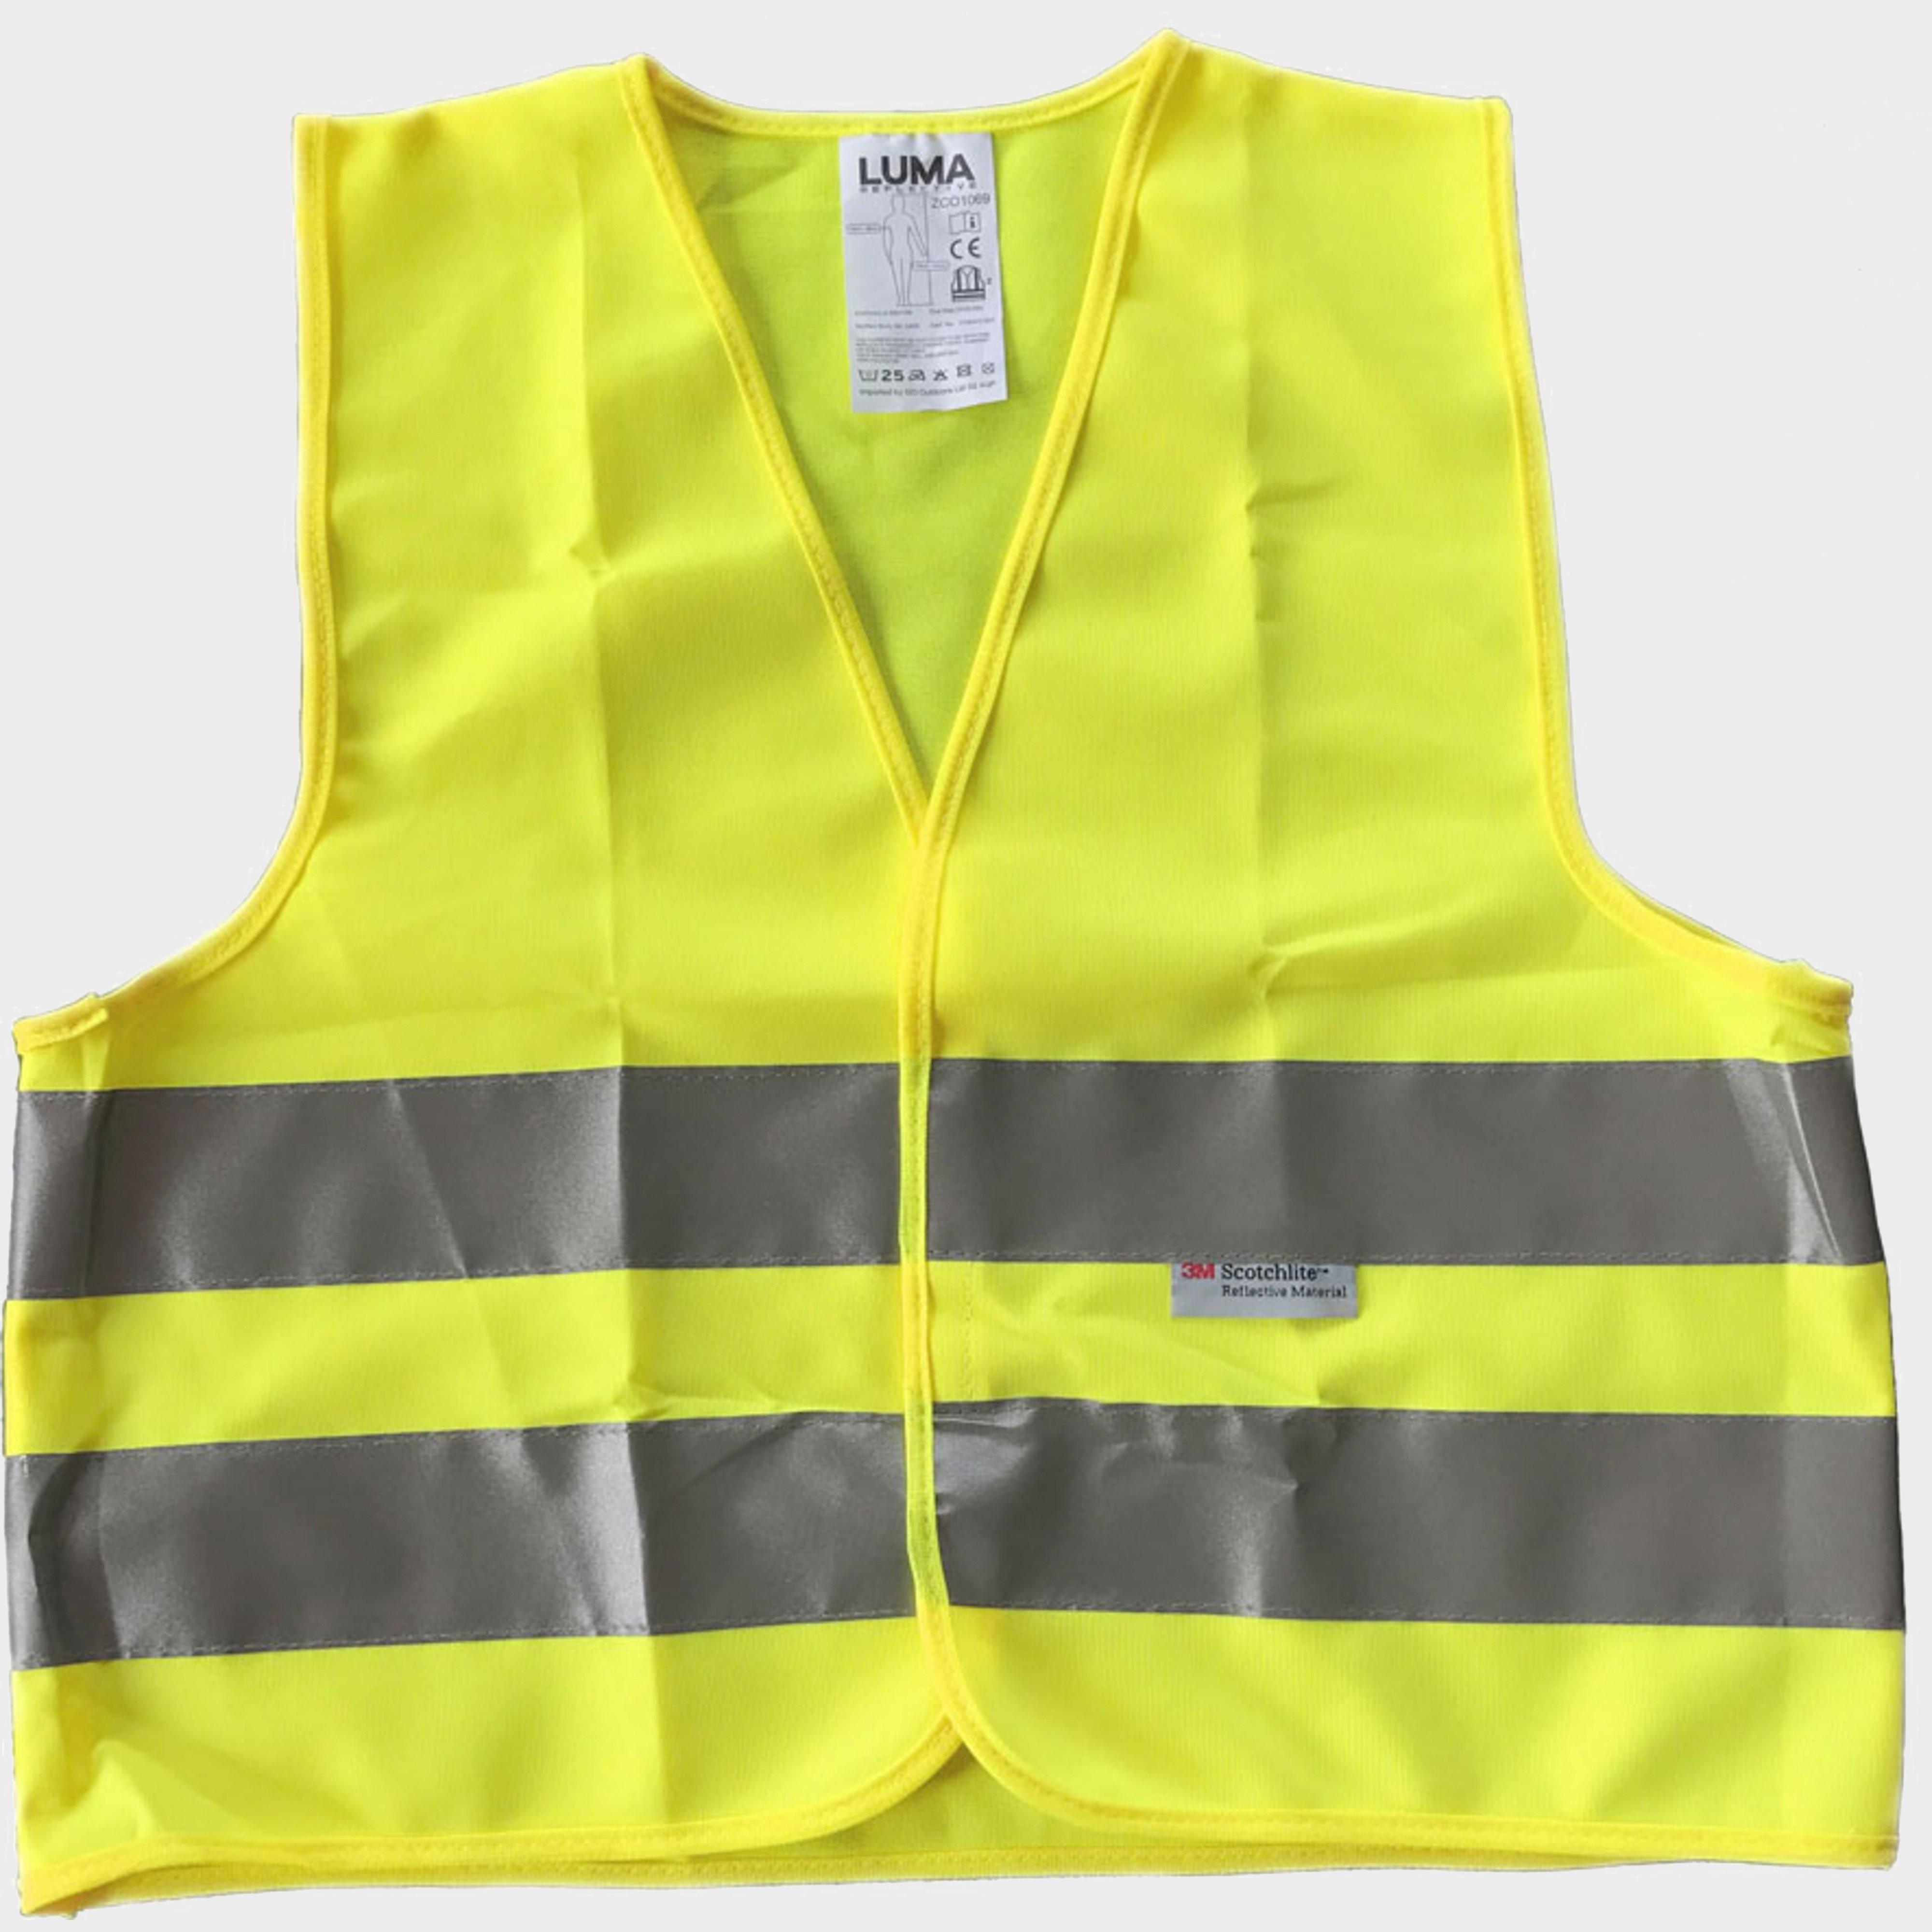 Luma Child Safety Vest - Yellow/3m  Yellow/3m